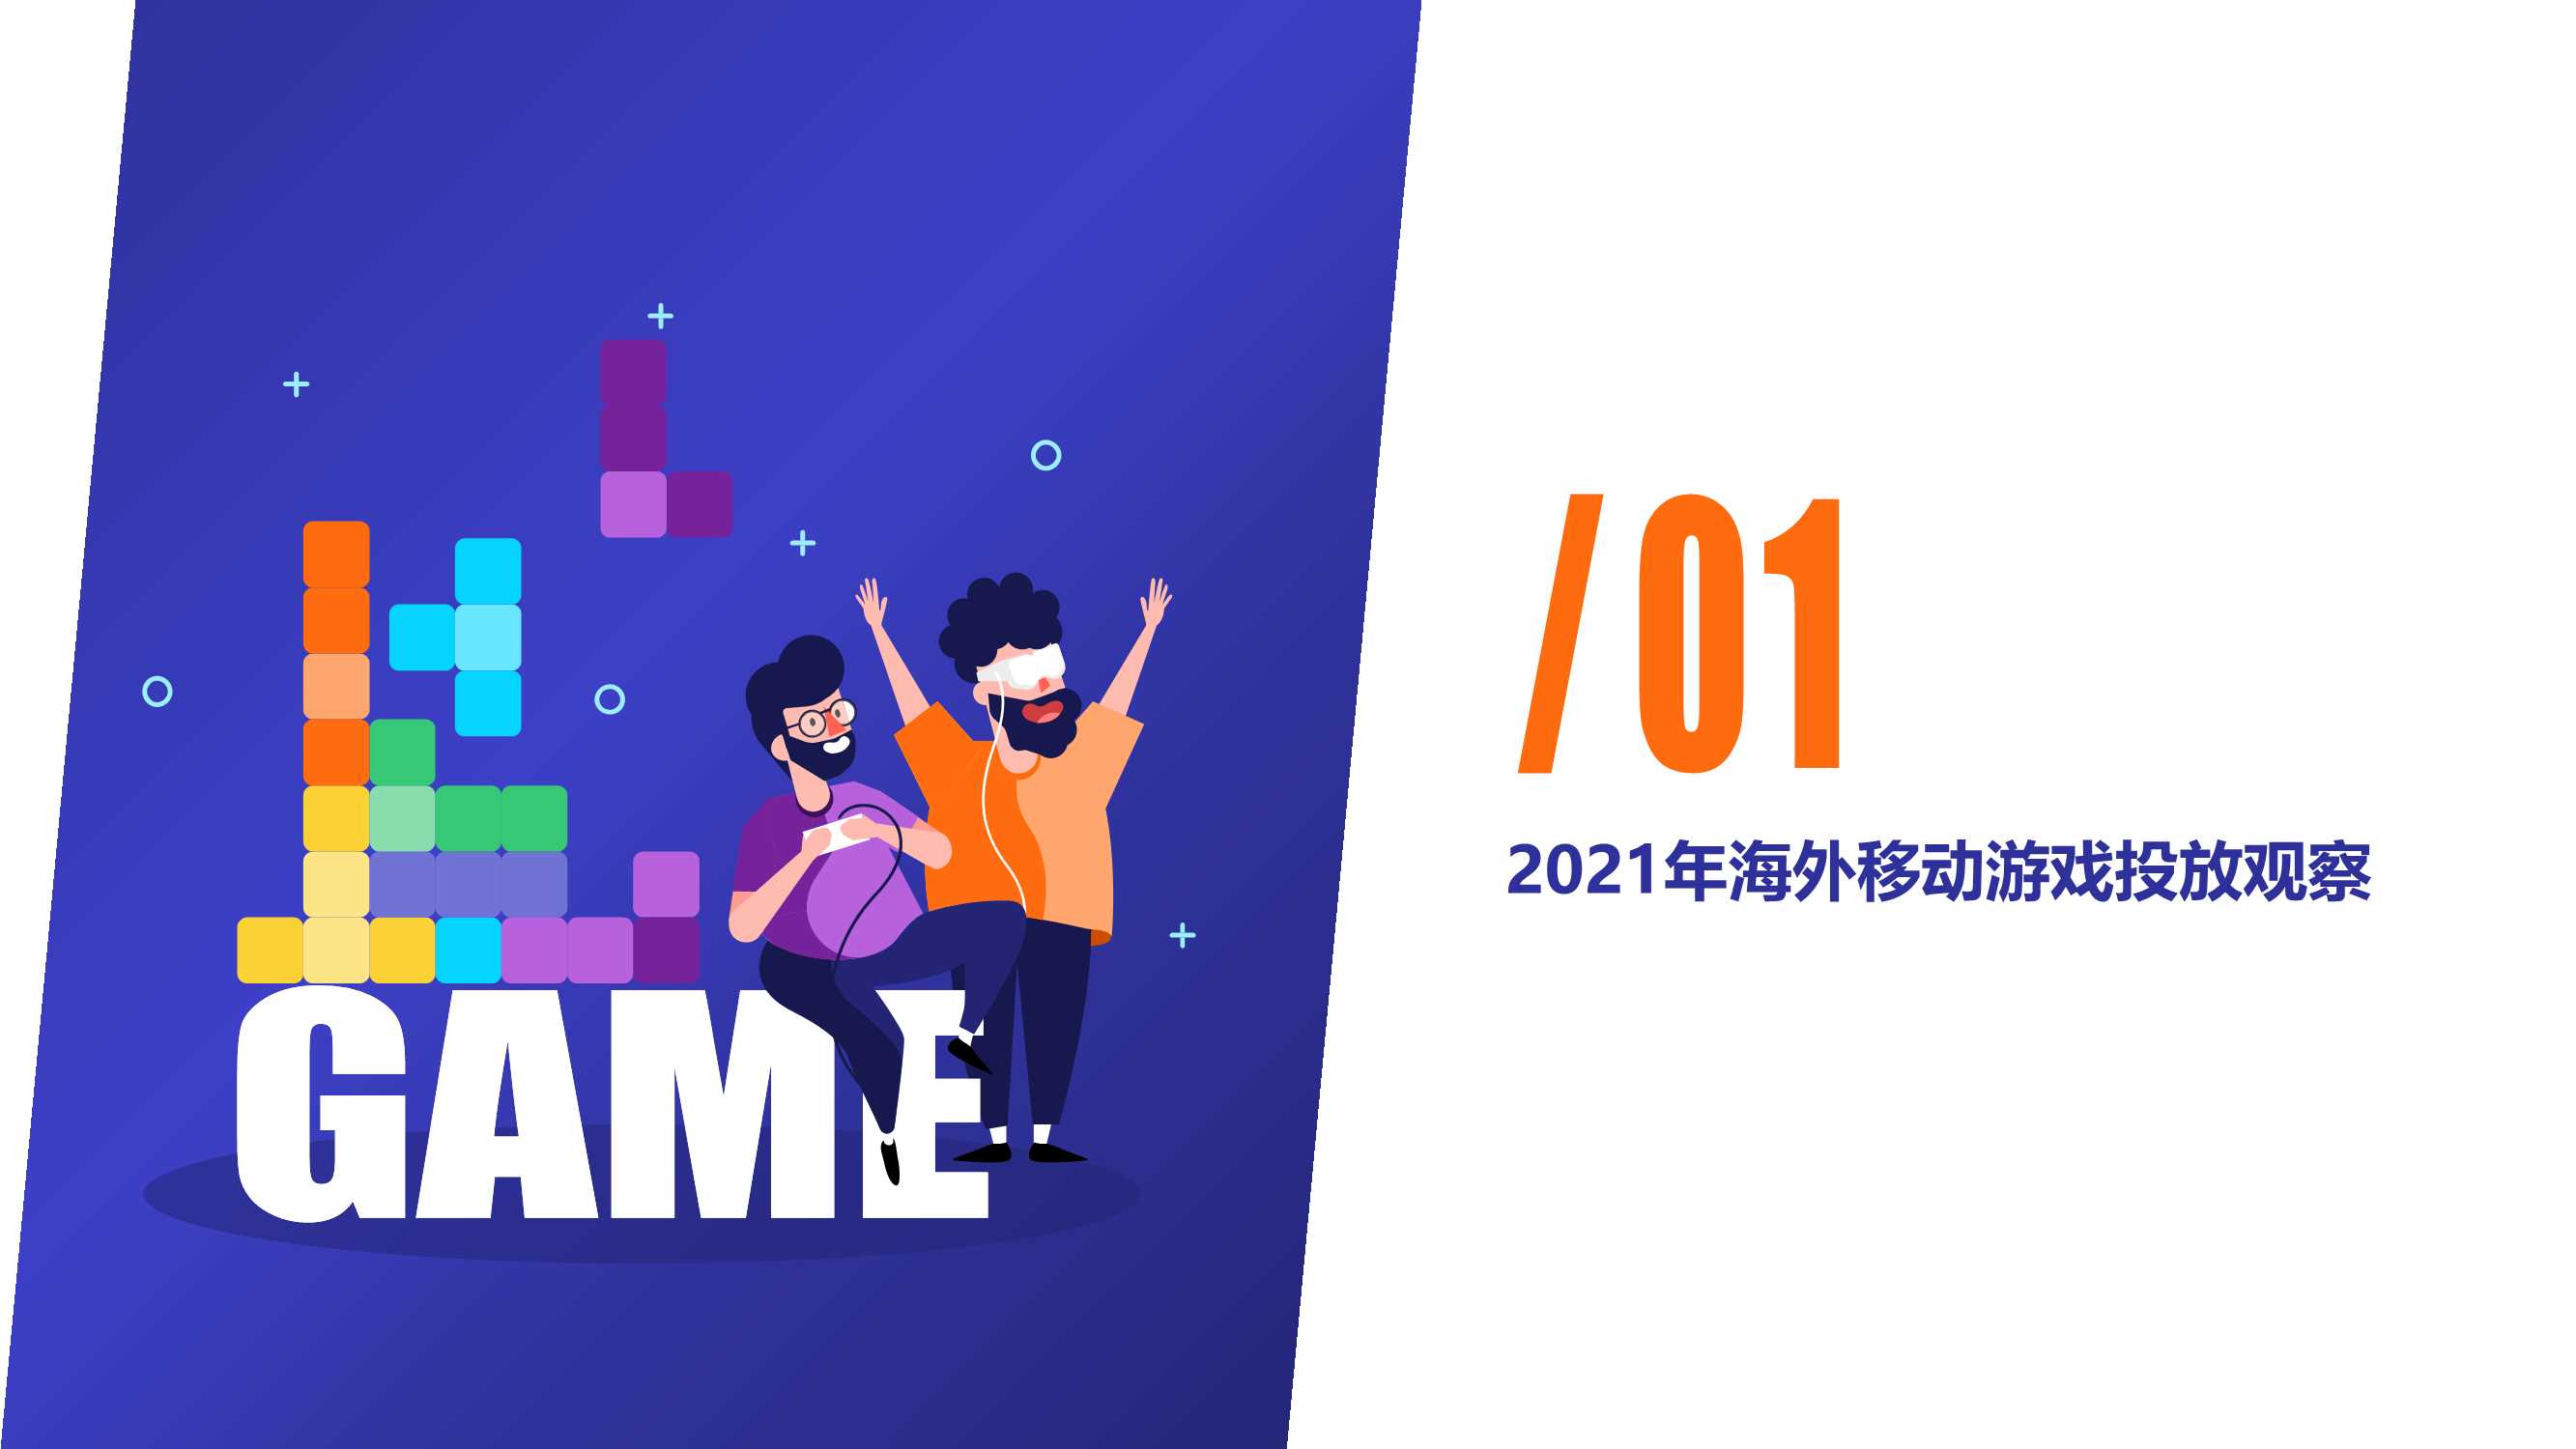 广大大-2021年益智解谜移动游戏营销洞察-2021.12-31页